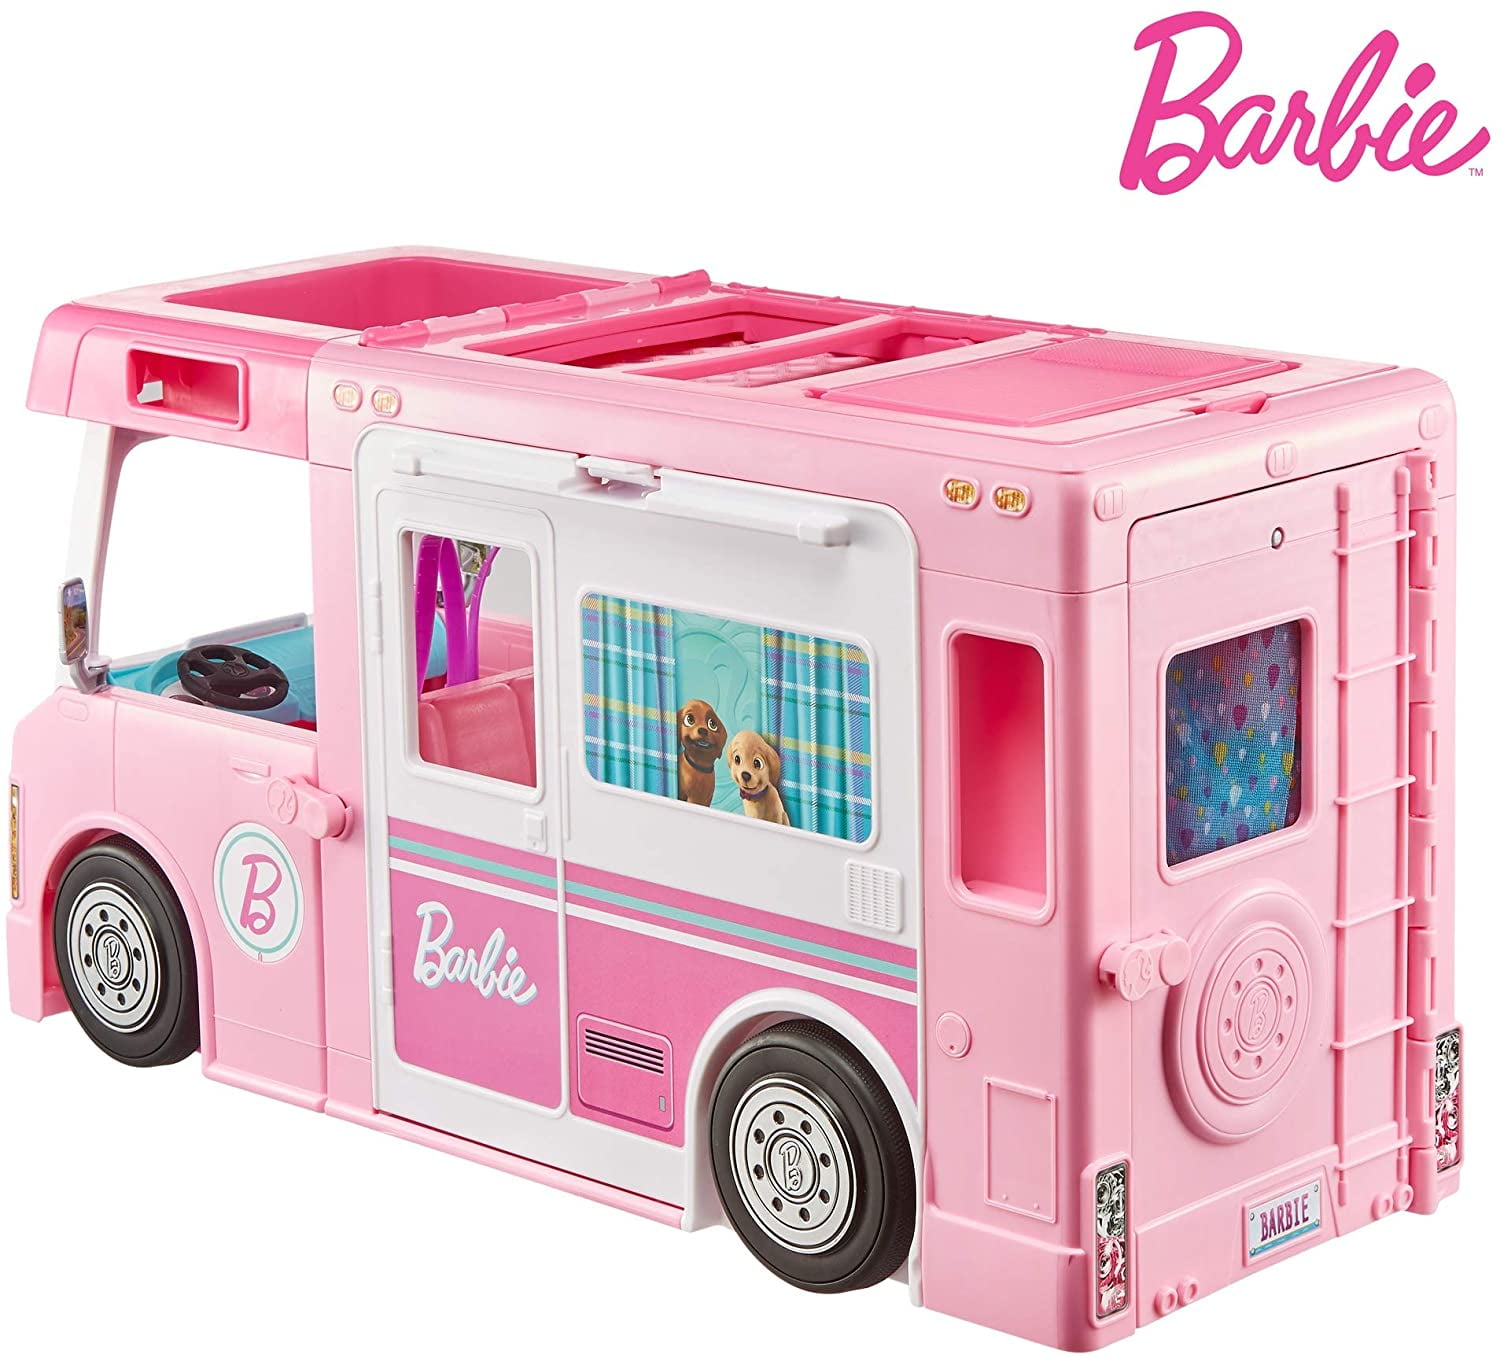 Barbie 3-en-1 dreamcamper pack avec piscine, camion, bateau et 60  accessoires, 1 ea